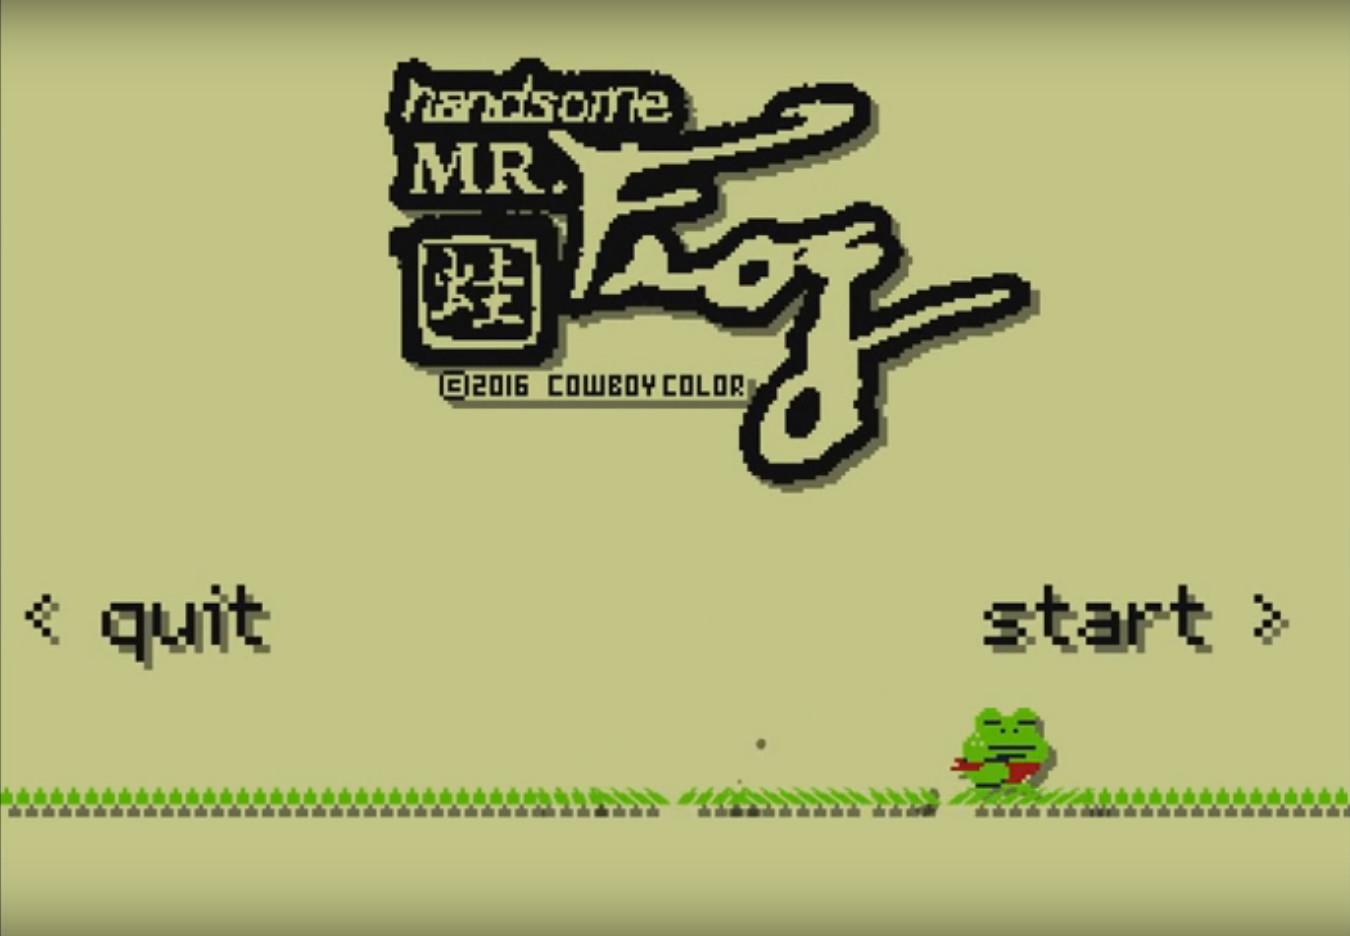 Handsome Mr. Frog